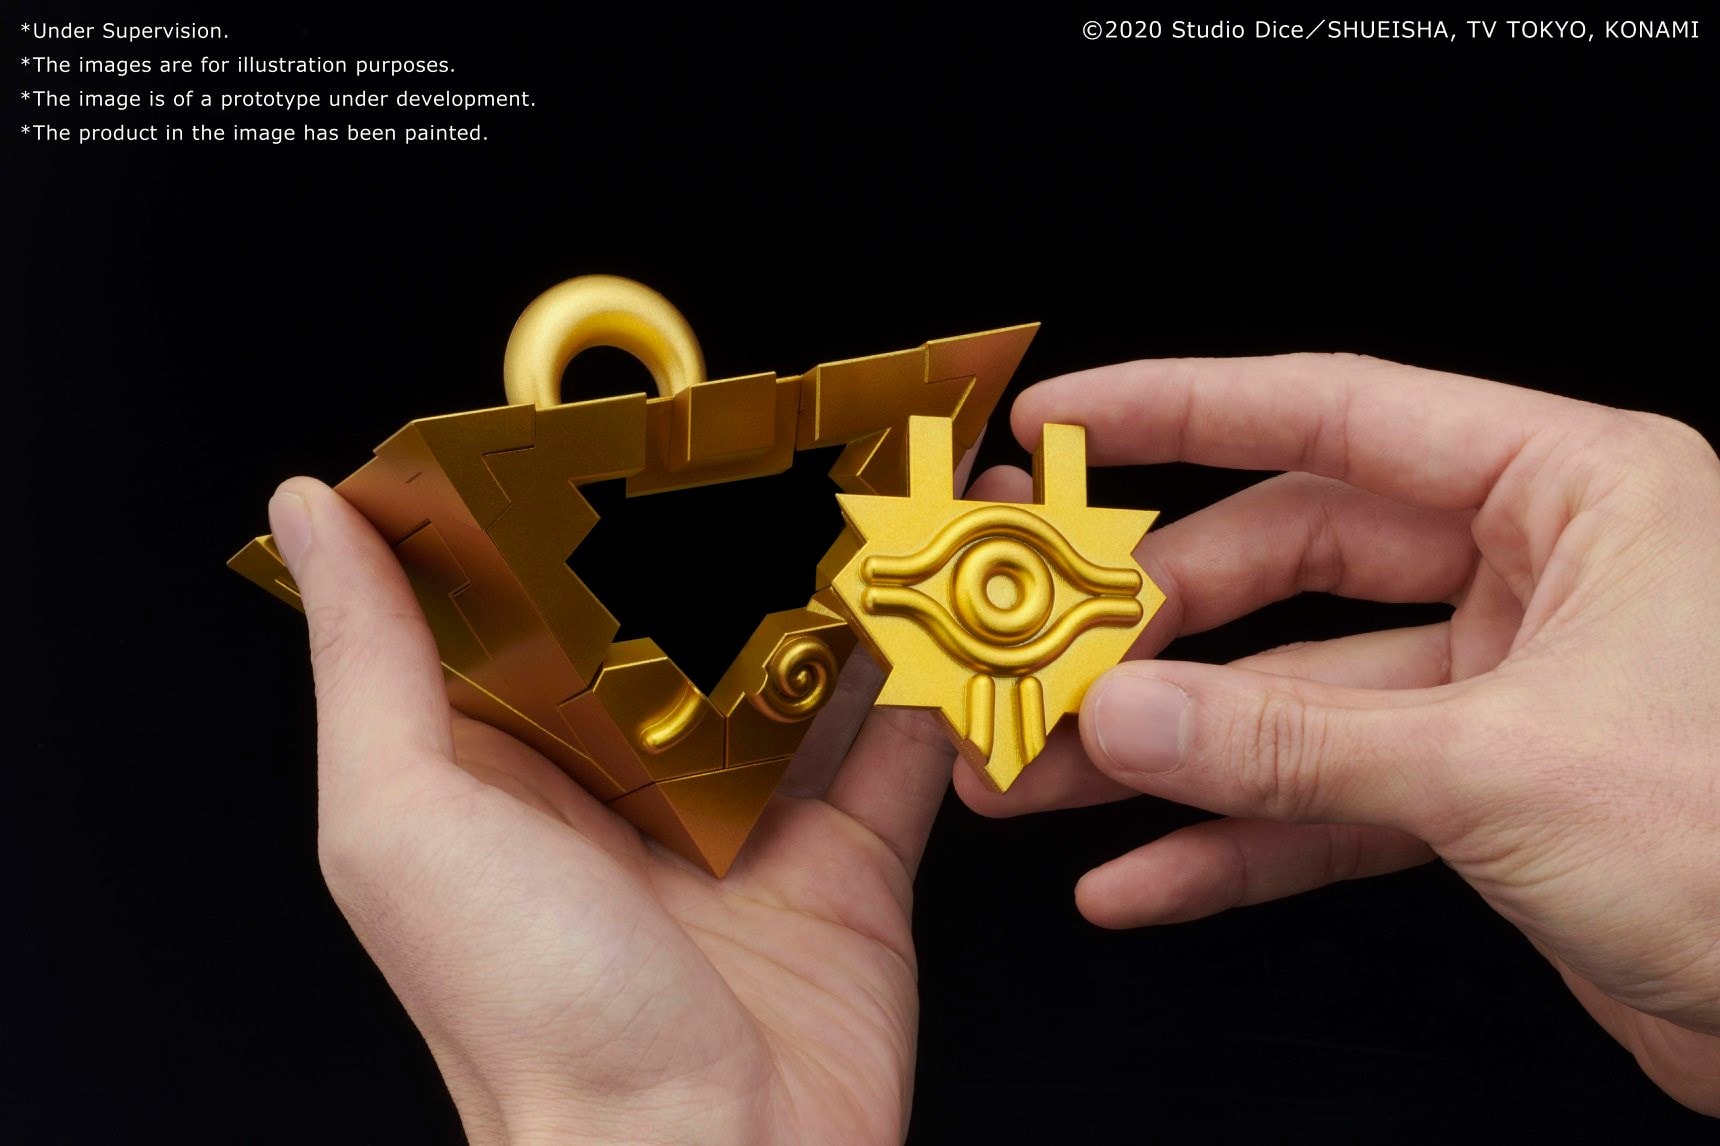 BANDAI 全新系列品牌 ULTIMAGEAR 首款商品推出《遊戲王》經典道具「千年積木」